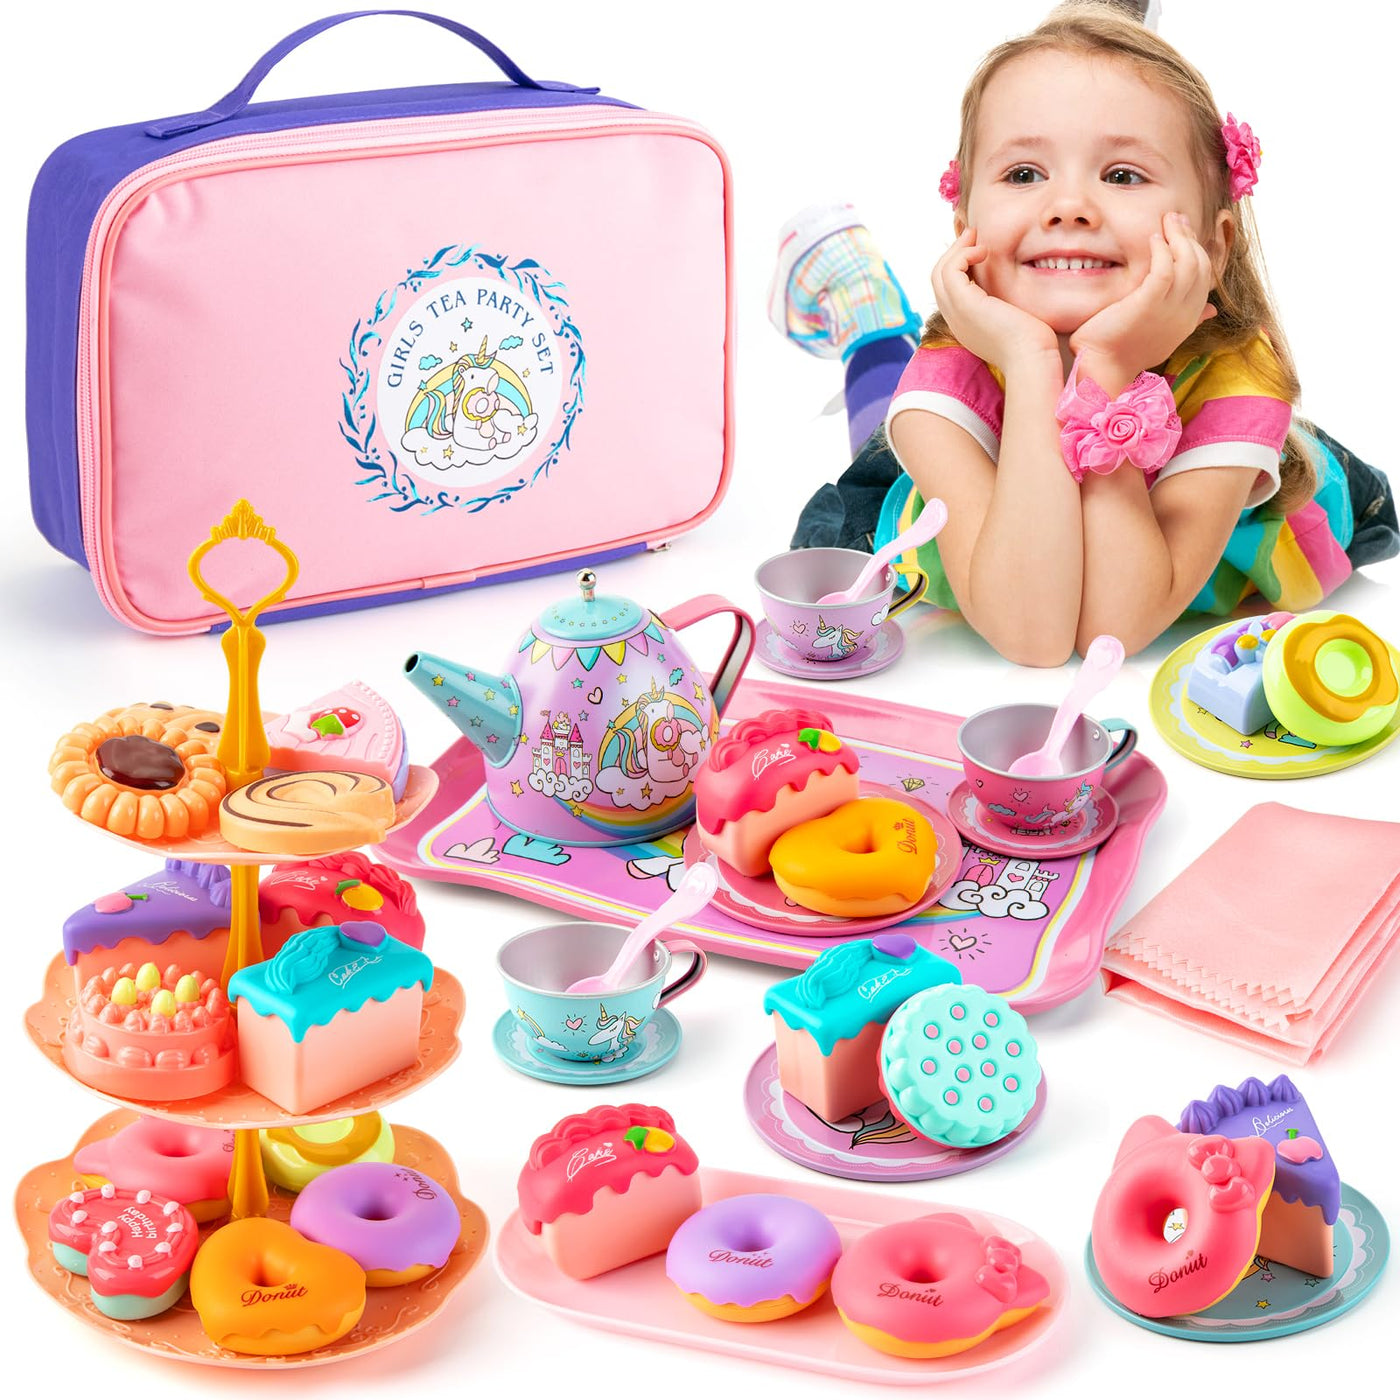 Children's tea set, children's kitchen accessories dolls' tableware tea party